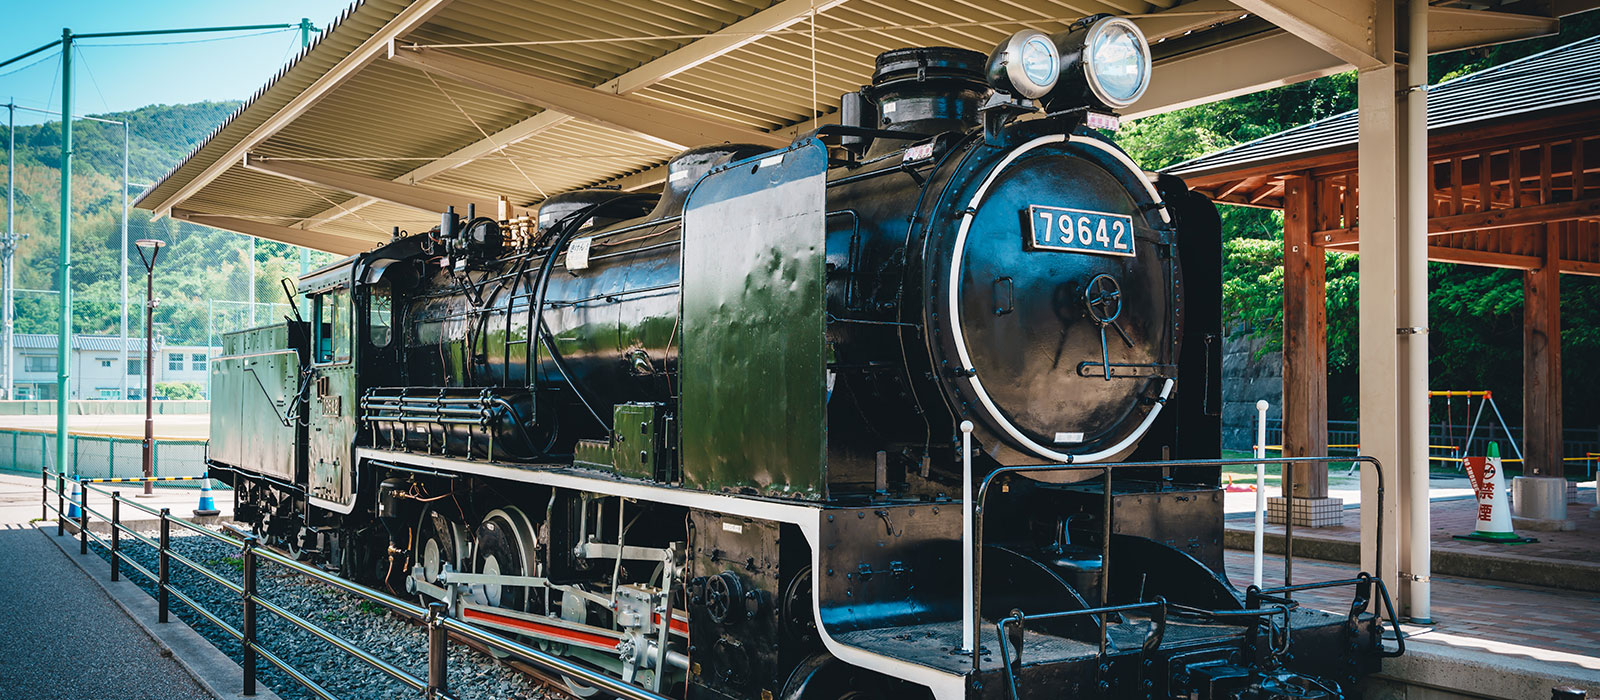 王子の森公園に展示されている蒸気機関車（SL）